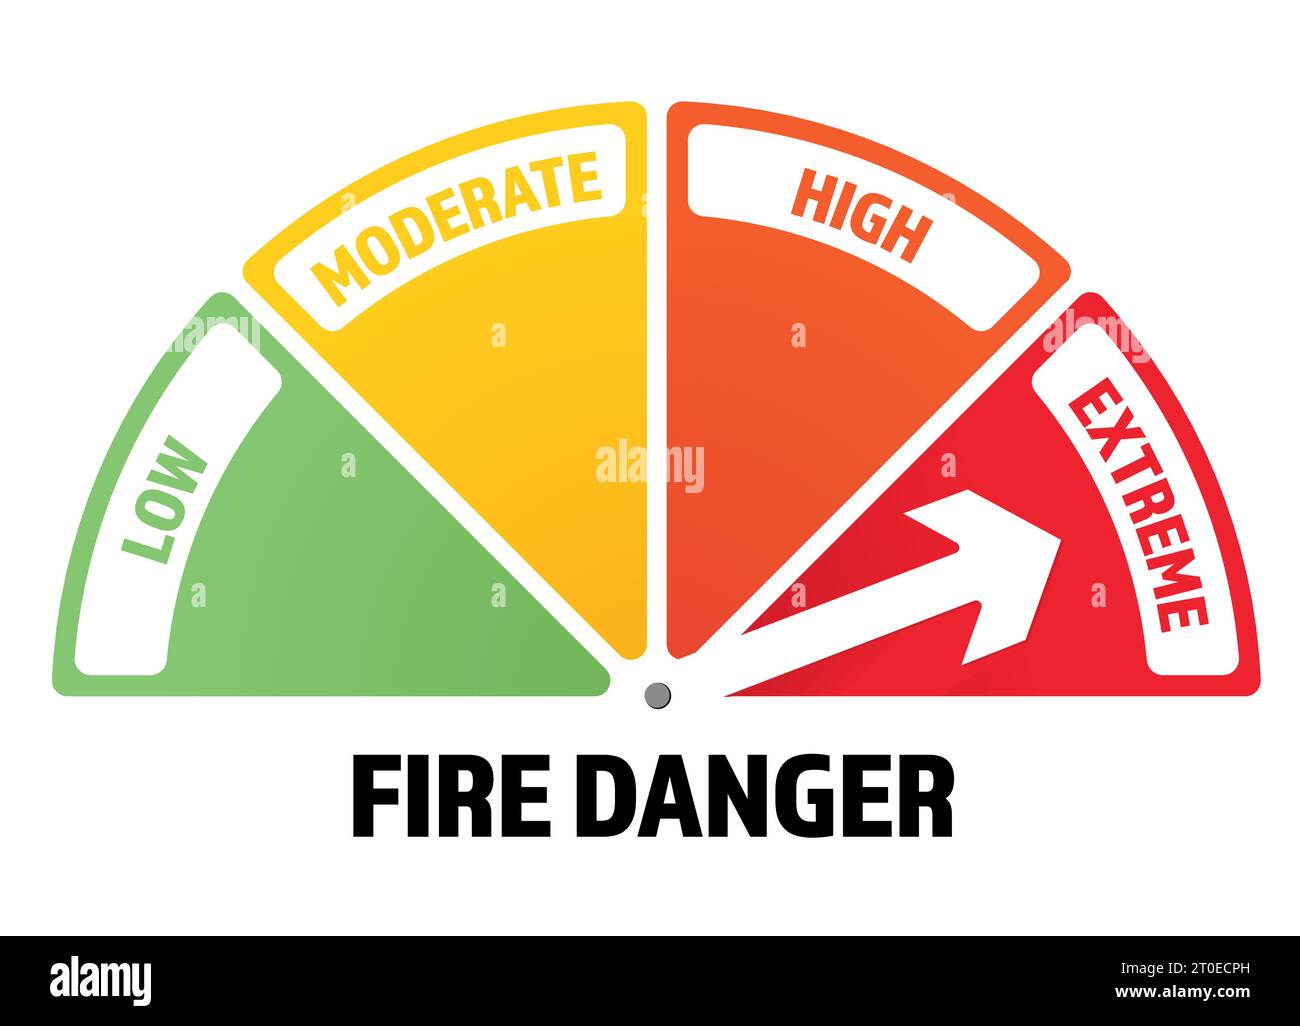 Infografica sulla valutazione del pericolo di incendio con la freccia su Extreme. Utilizzato nei mesi estivi asciutti per prevenire incendi boschivi o incendi selvatici. Scala di valutazione semplice. Illustrazione Vettoriale